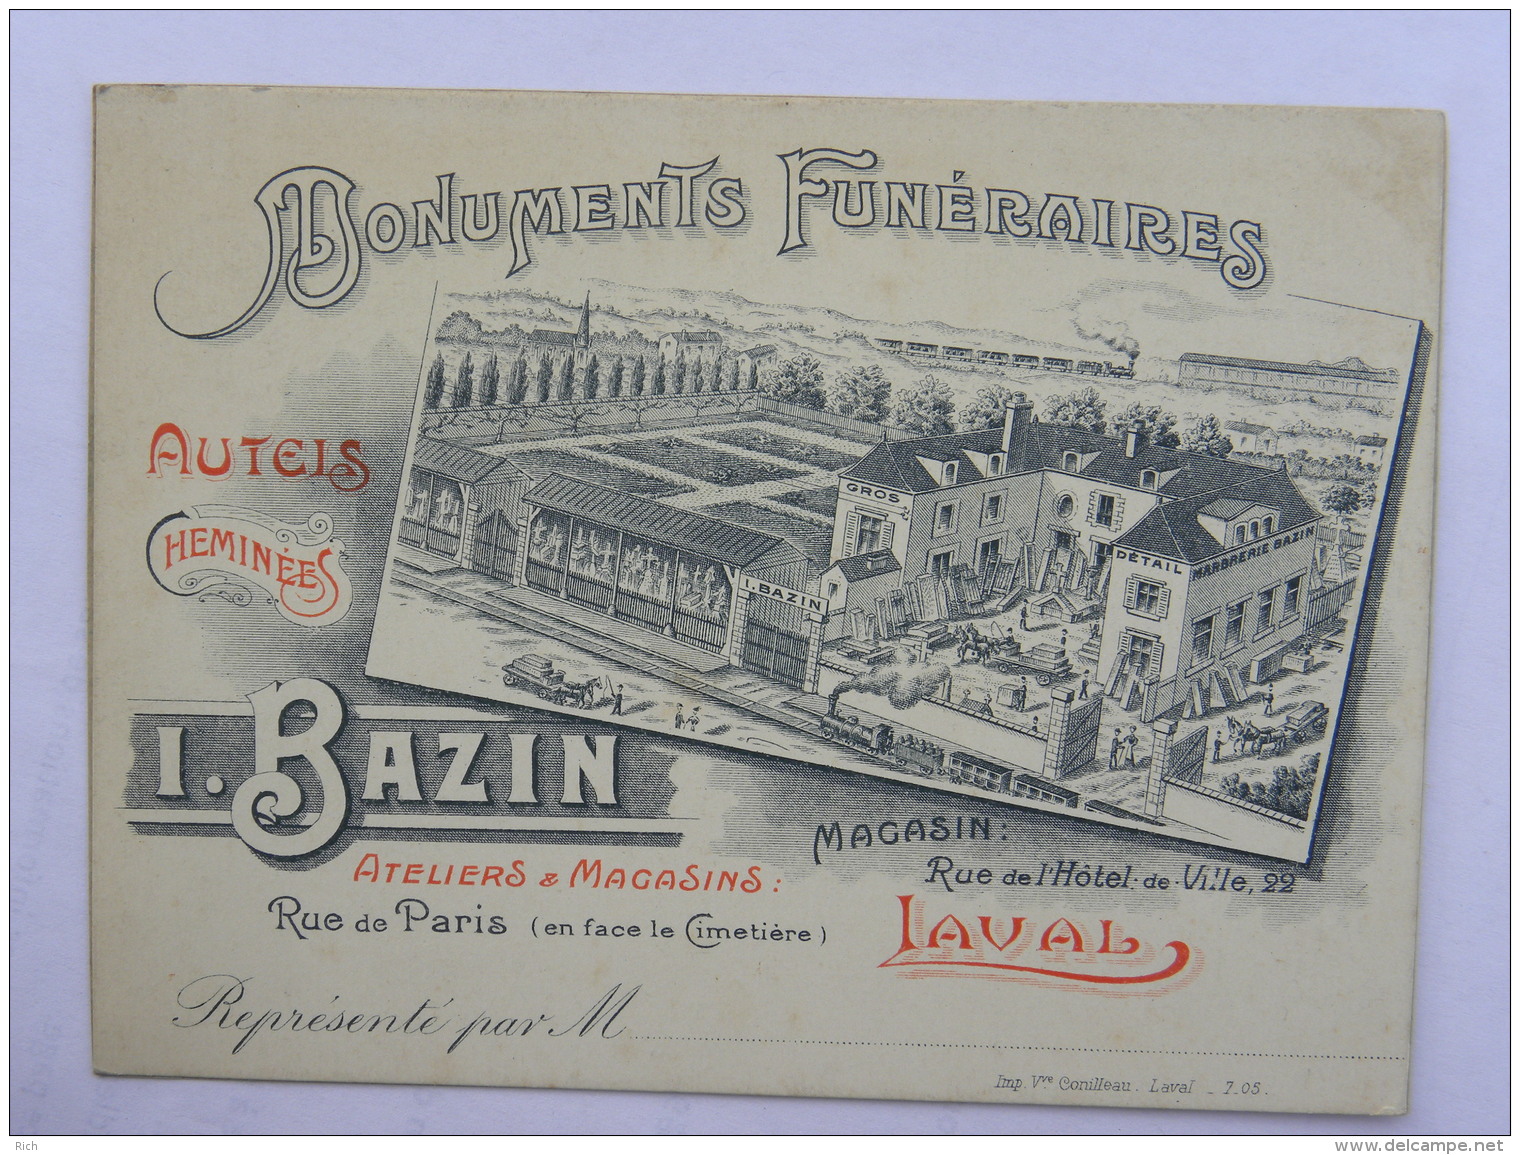 CPA (53) Mayenne - LAVAL - Carte Commerciale - I. BAZIN - Monuments Funéraires, Autels, Cheminées ... - Laval